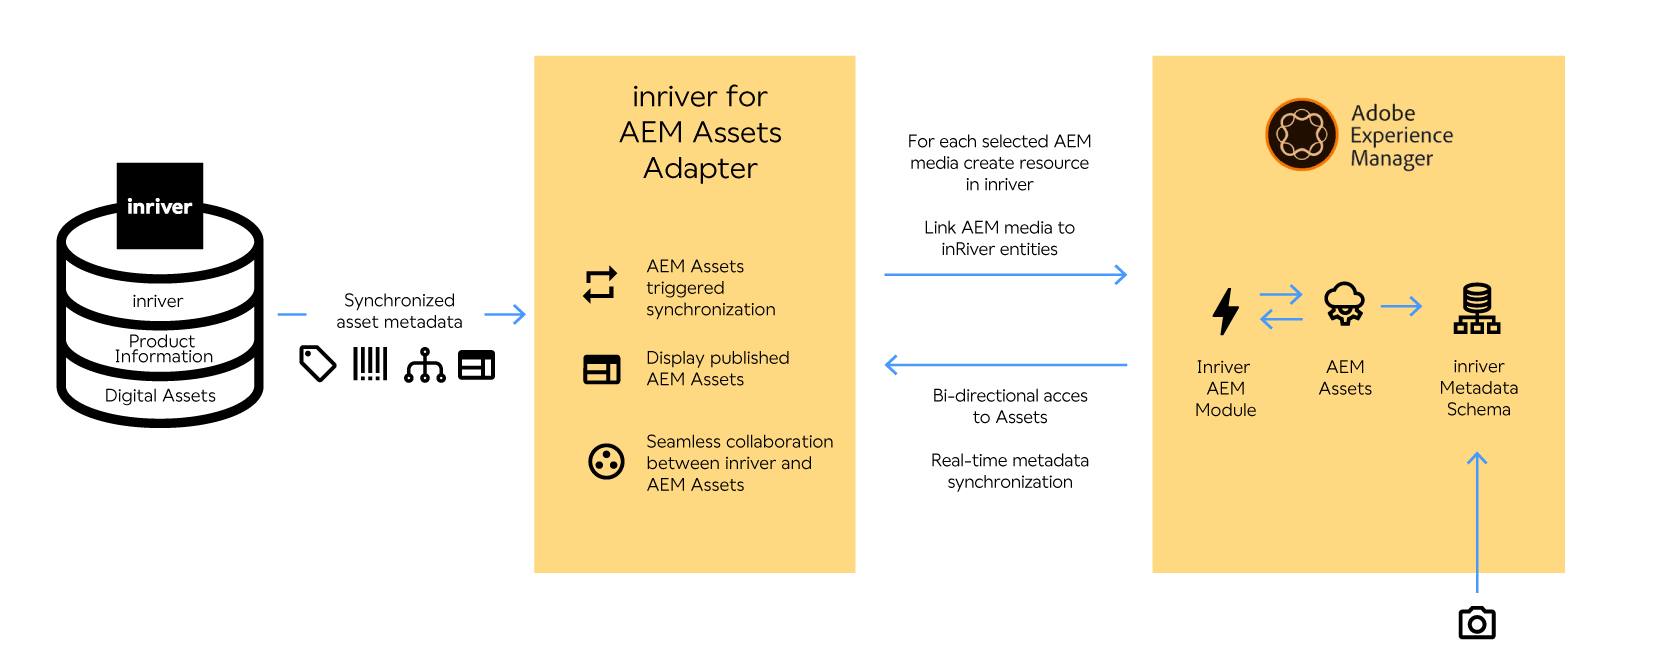 inriver AEM Assets Adapter model